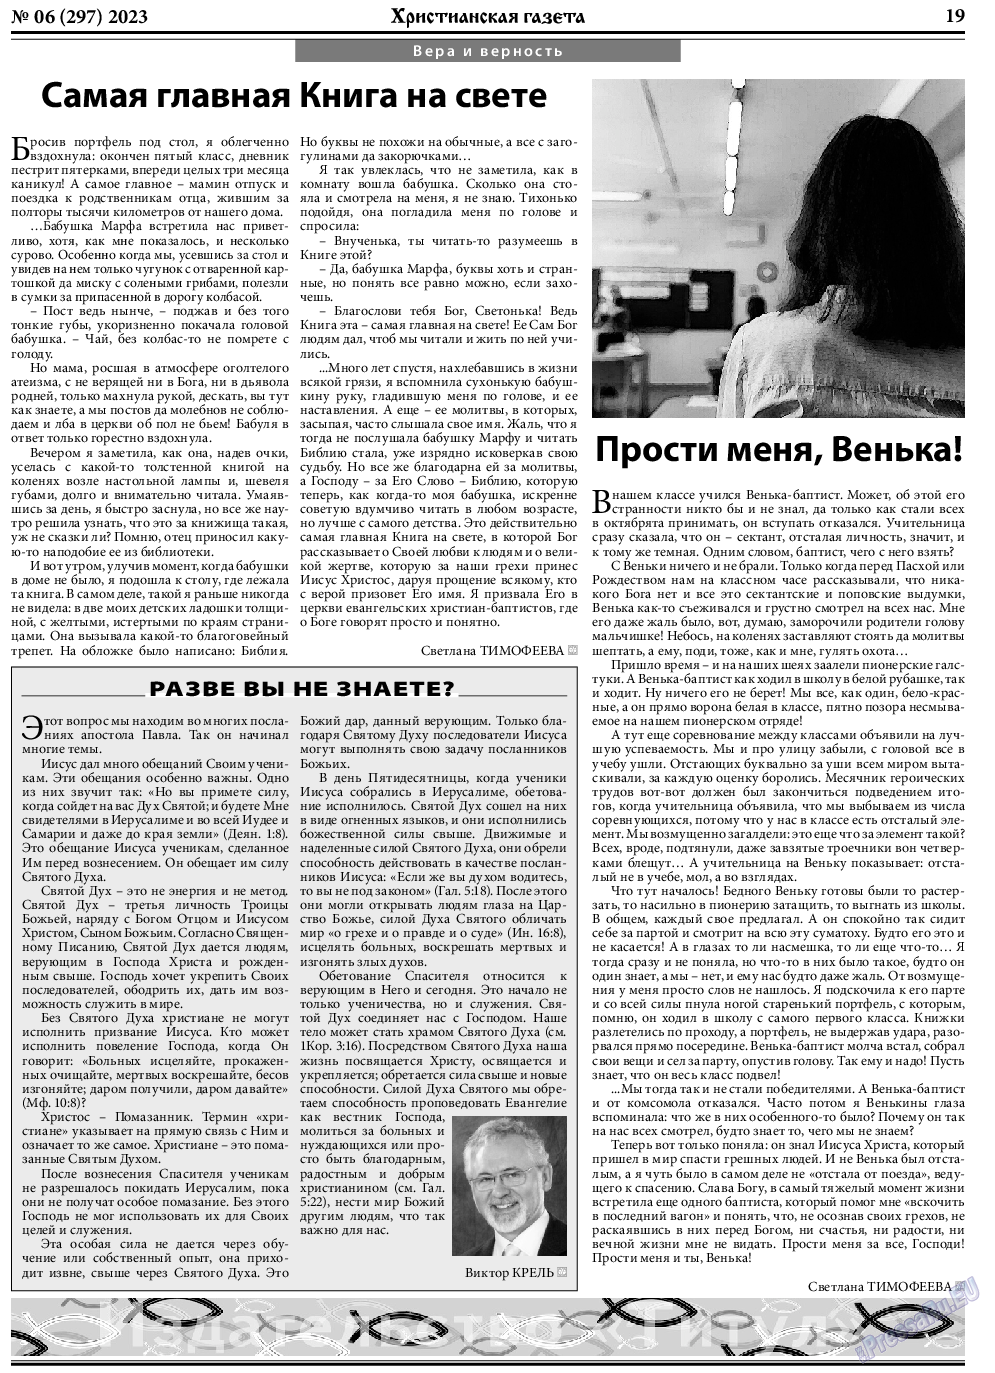 Христианская газета, газета. 2023 №6 стр.19